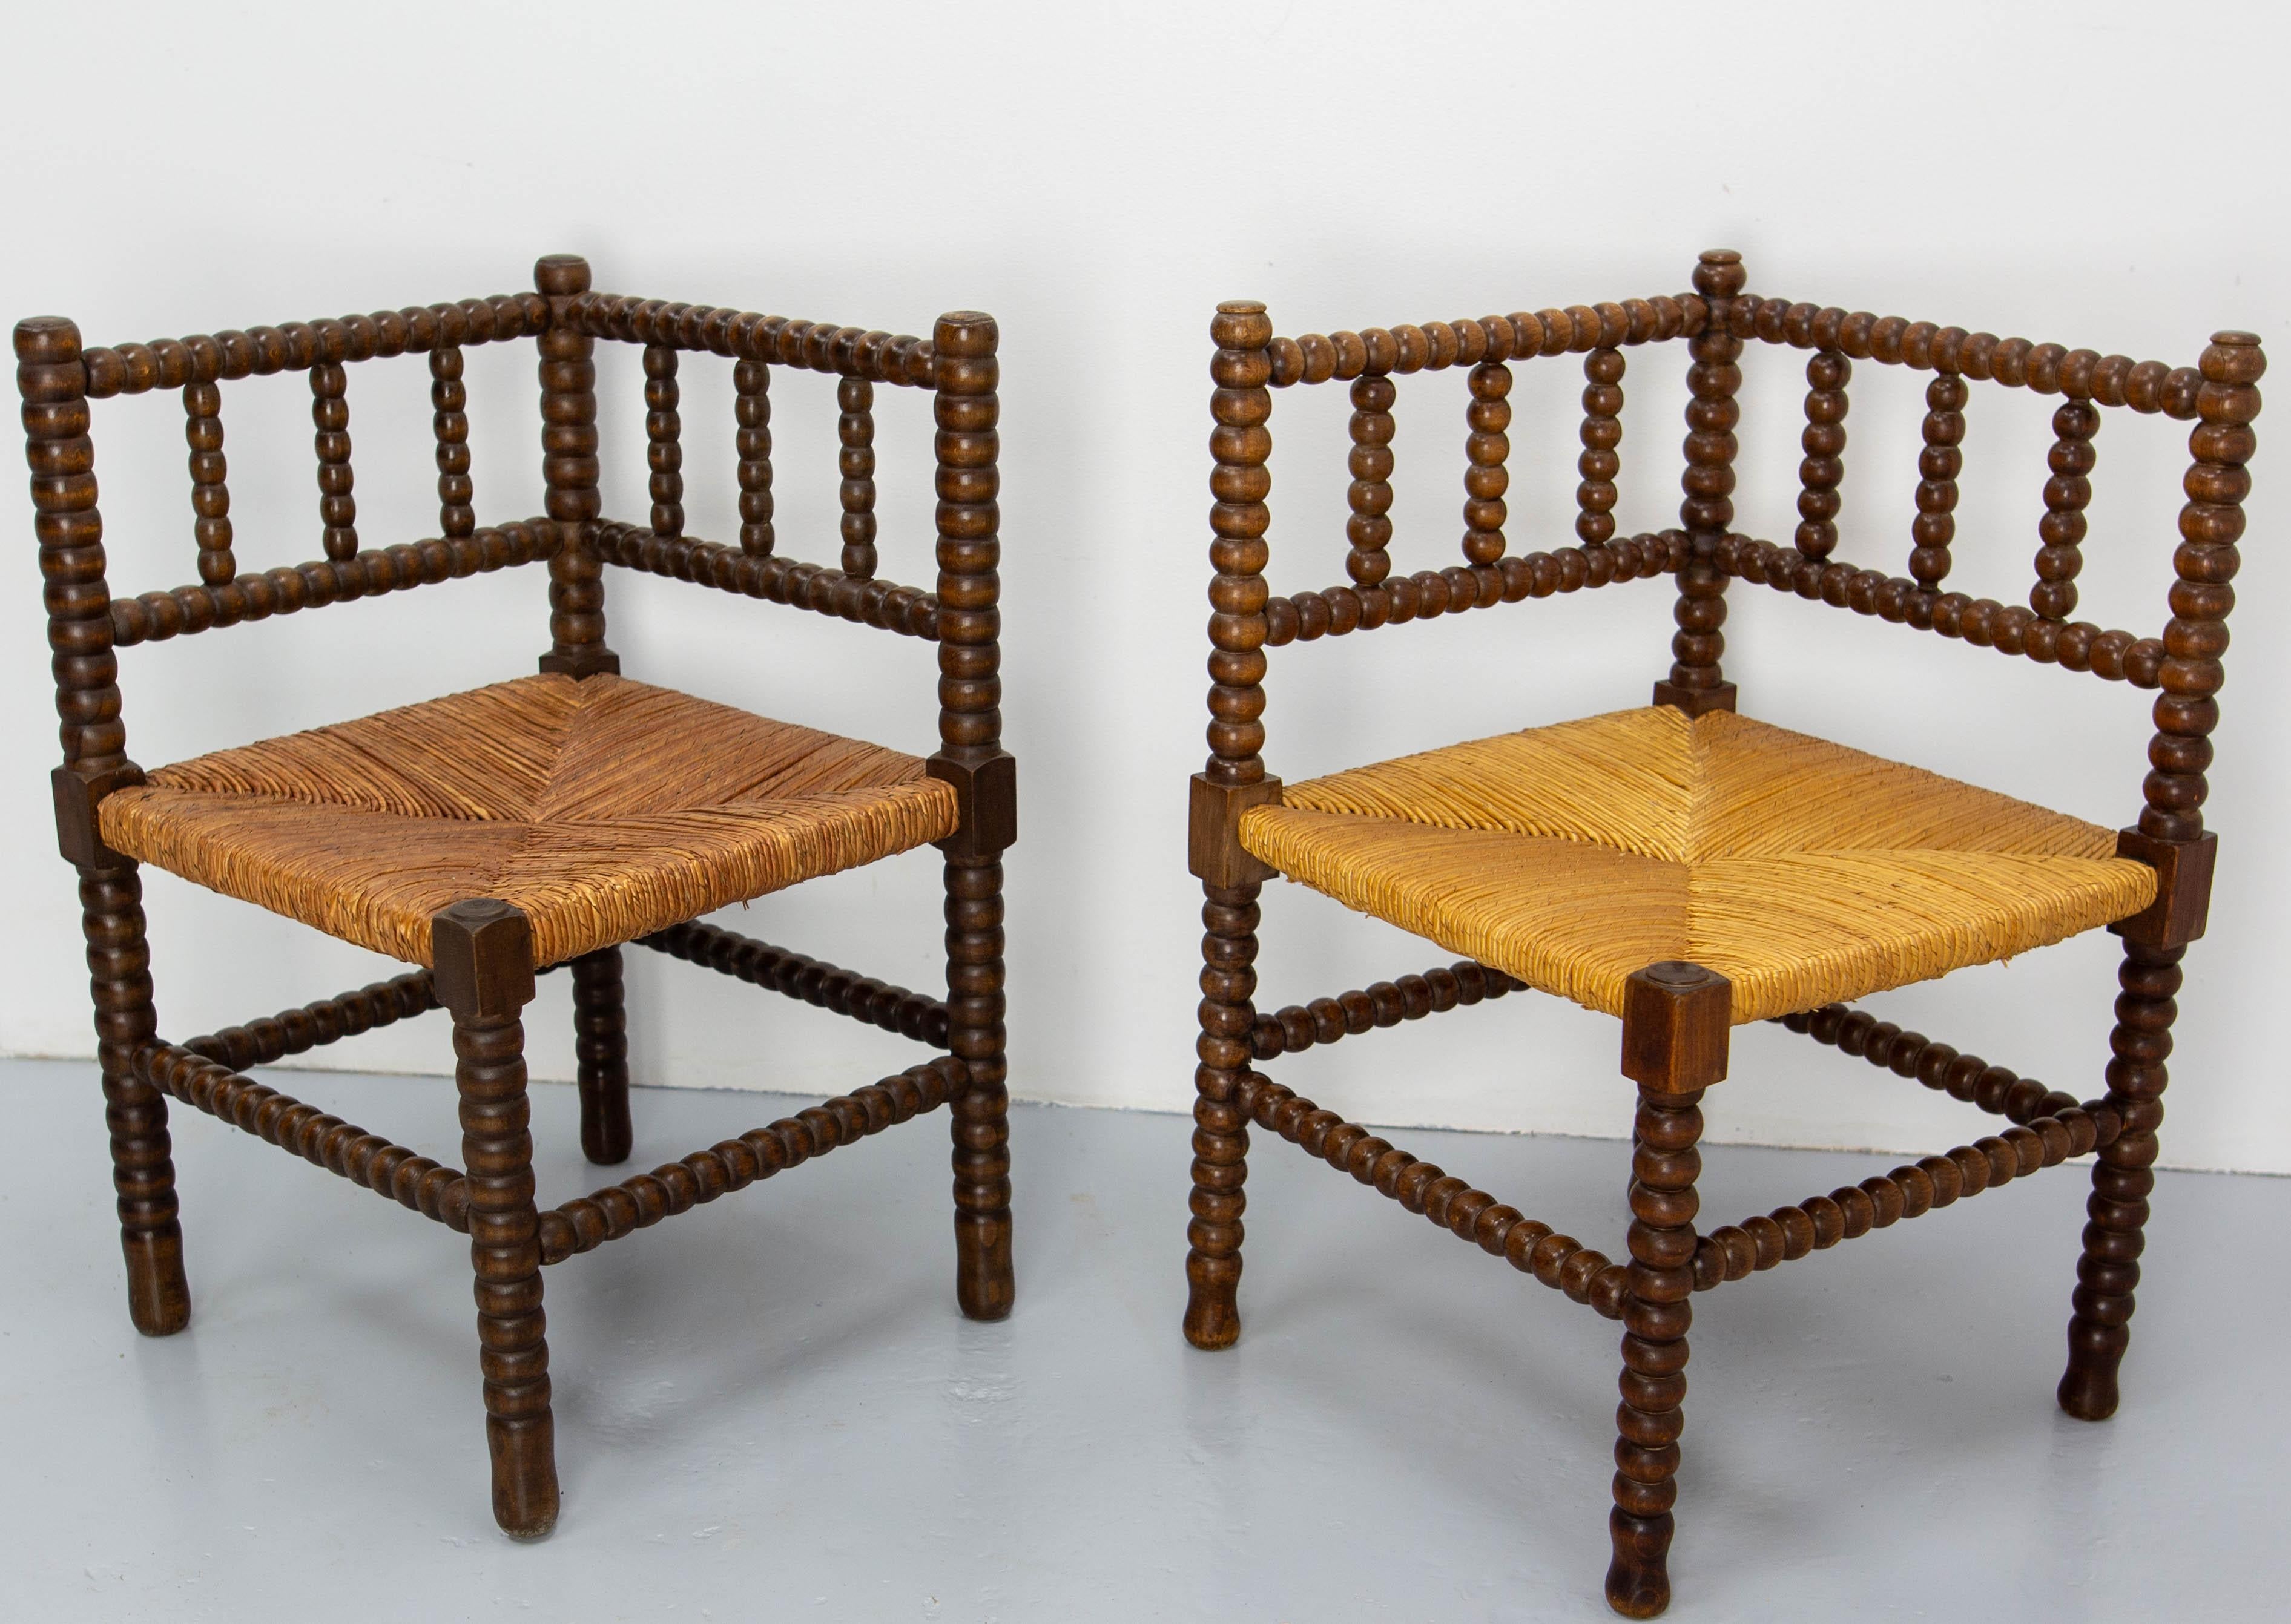 Französisches Stroh- und Drehstuhlpaar, um 1940
Falsches Paar aus einer anderen Quelle, das aber wie Beistellstühle in einem Raum aufgestellt werden kann. Dies erklärt den Unterschied in den Strohfarben und auch die leichten Unterschiede in der Form